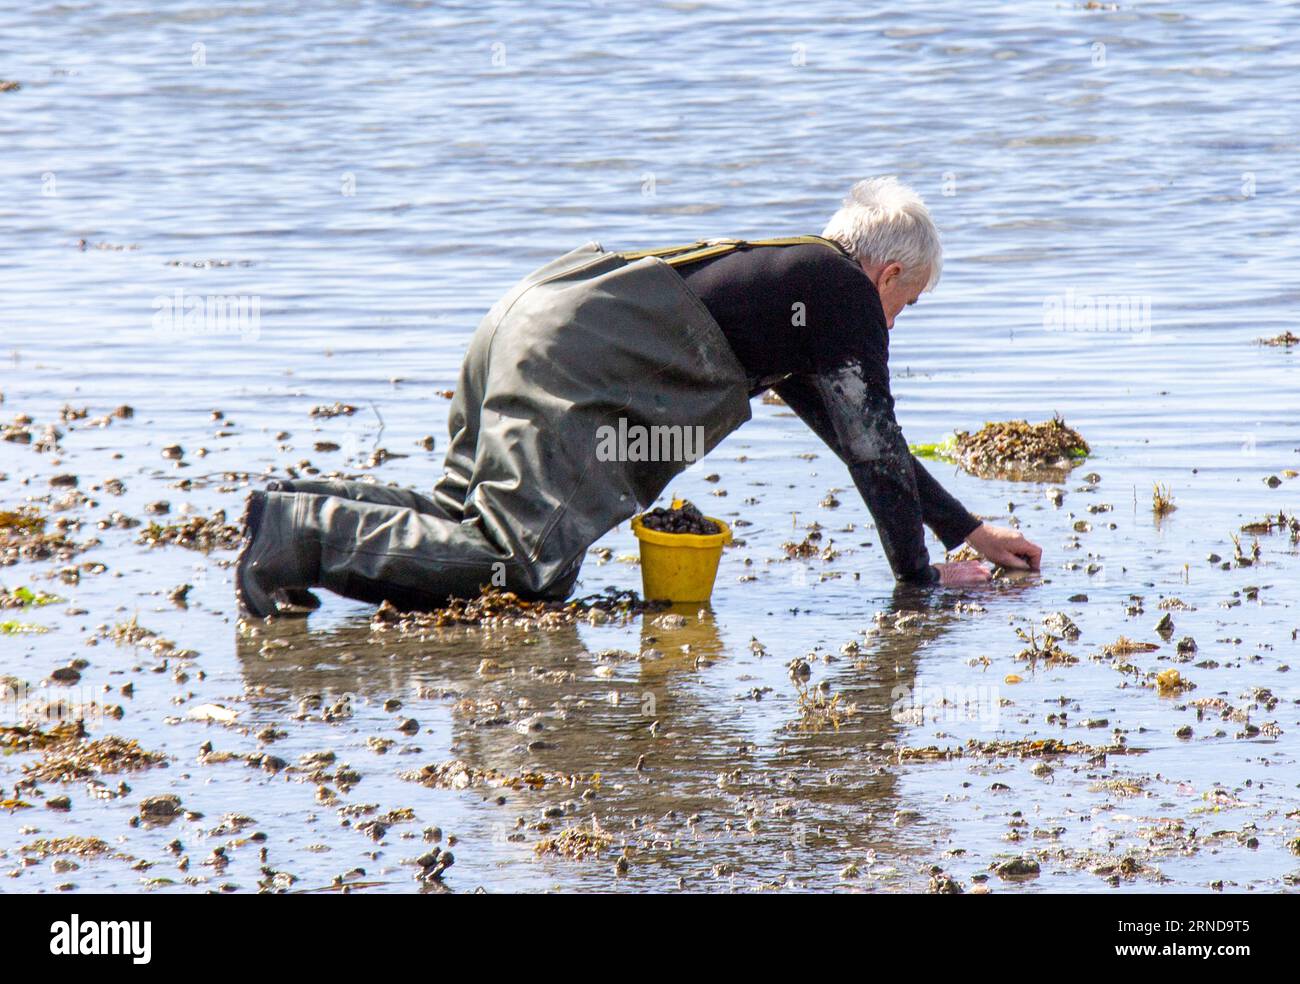 Homme collectant des periwinkles ou des Perrywinkles sur l'estran à marée basse. Banque D'Images